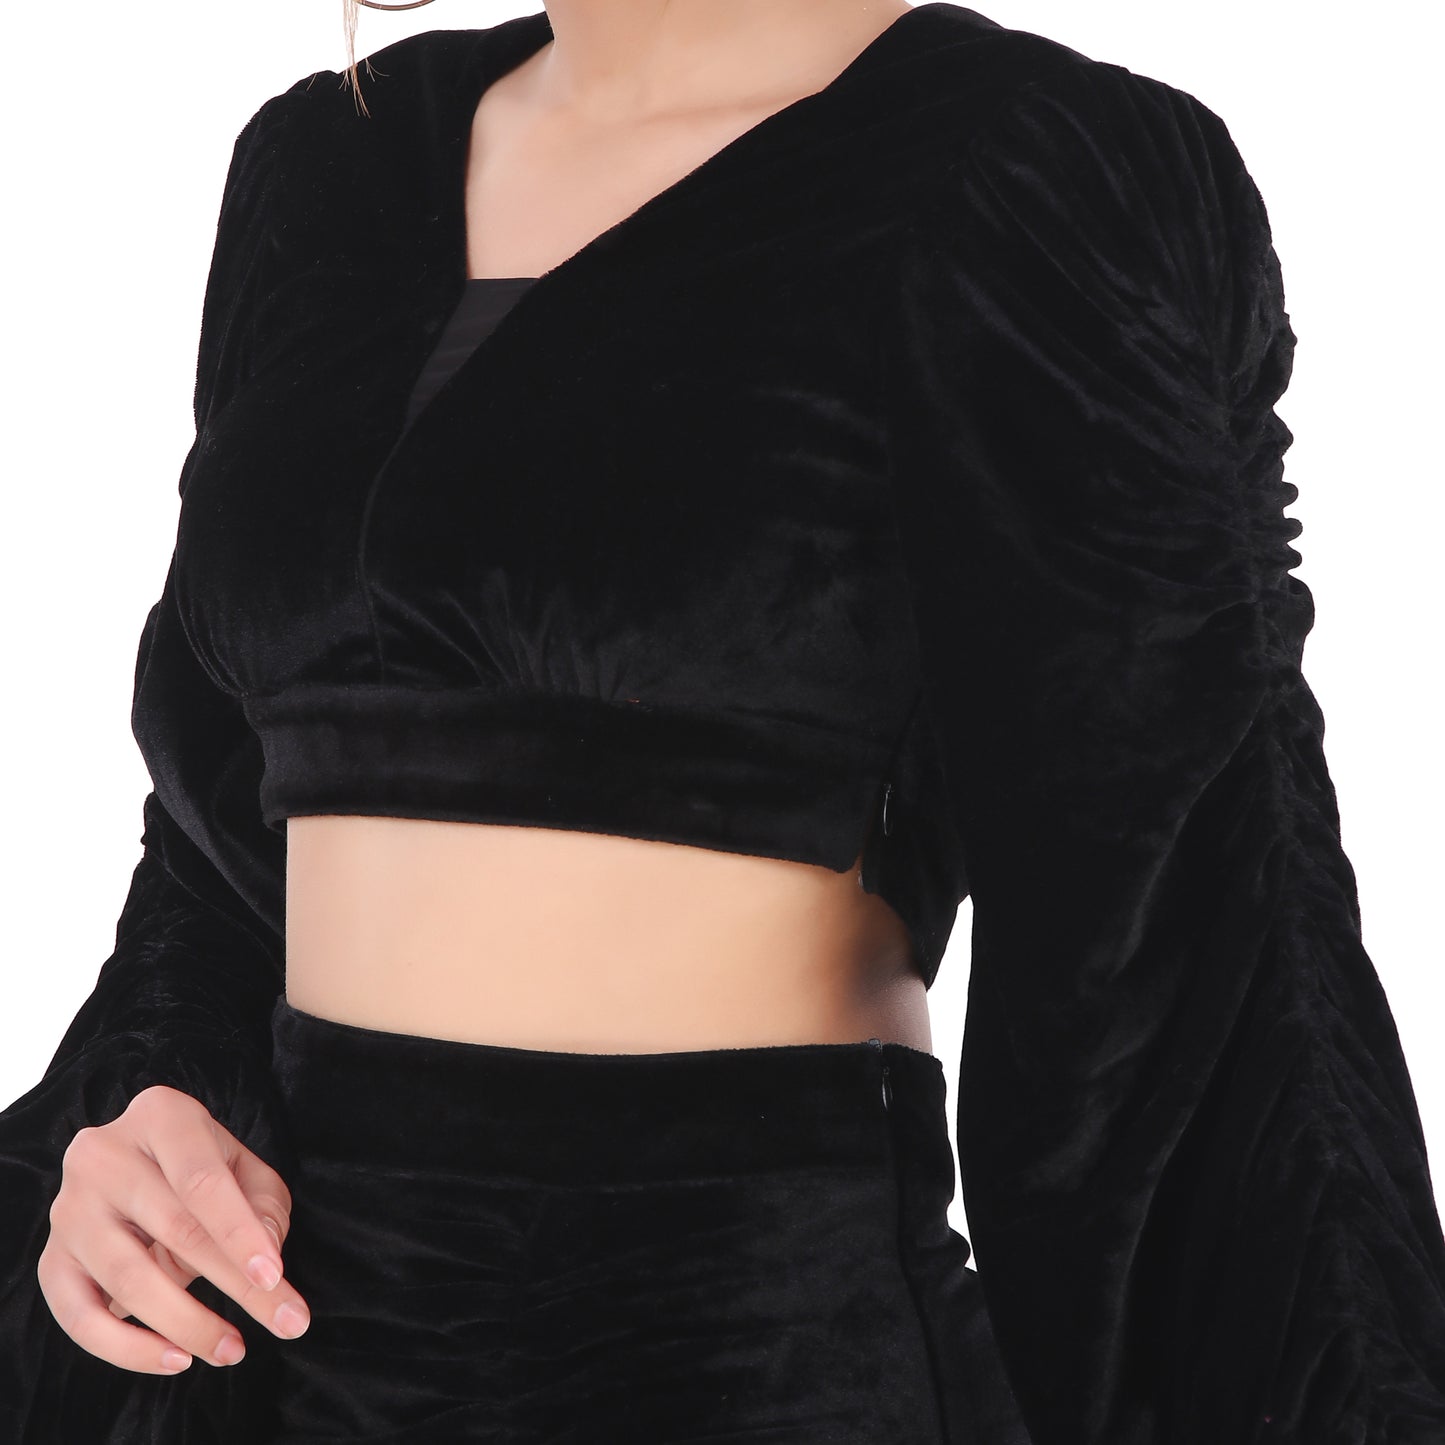 Black Velvet Blouse With Skirt